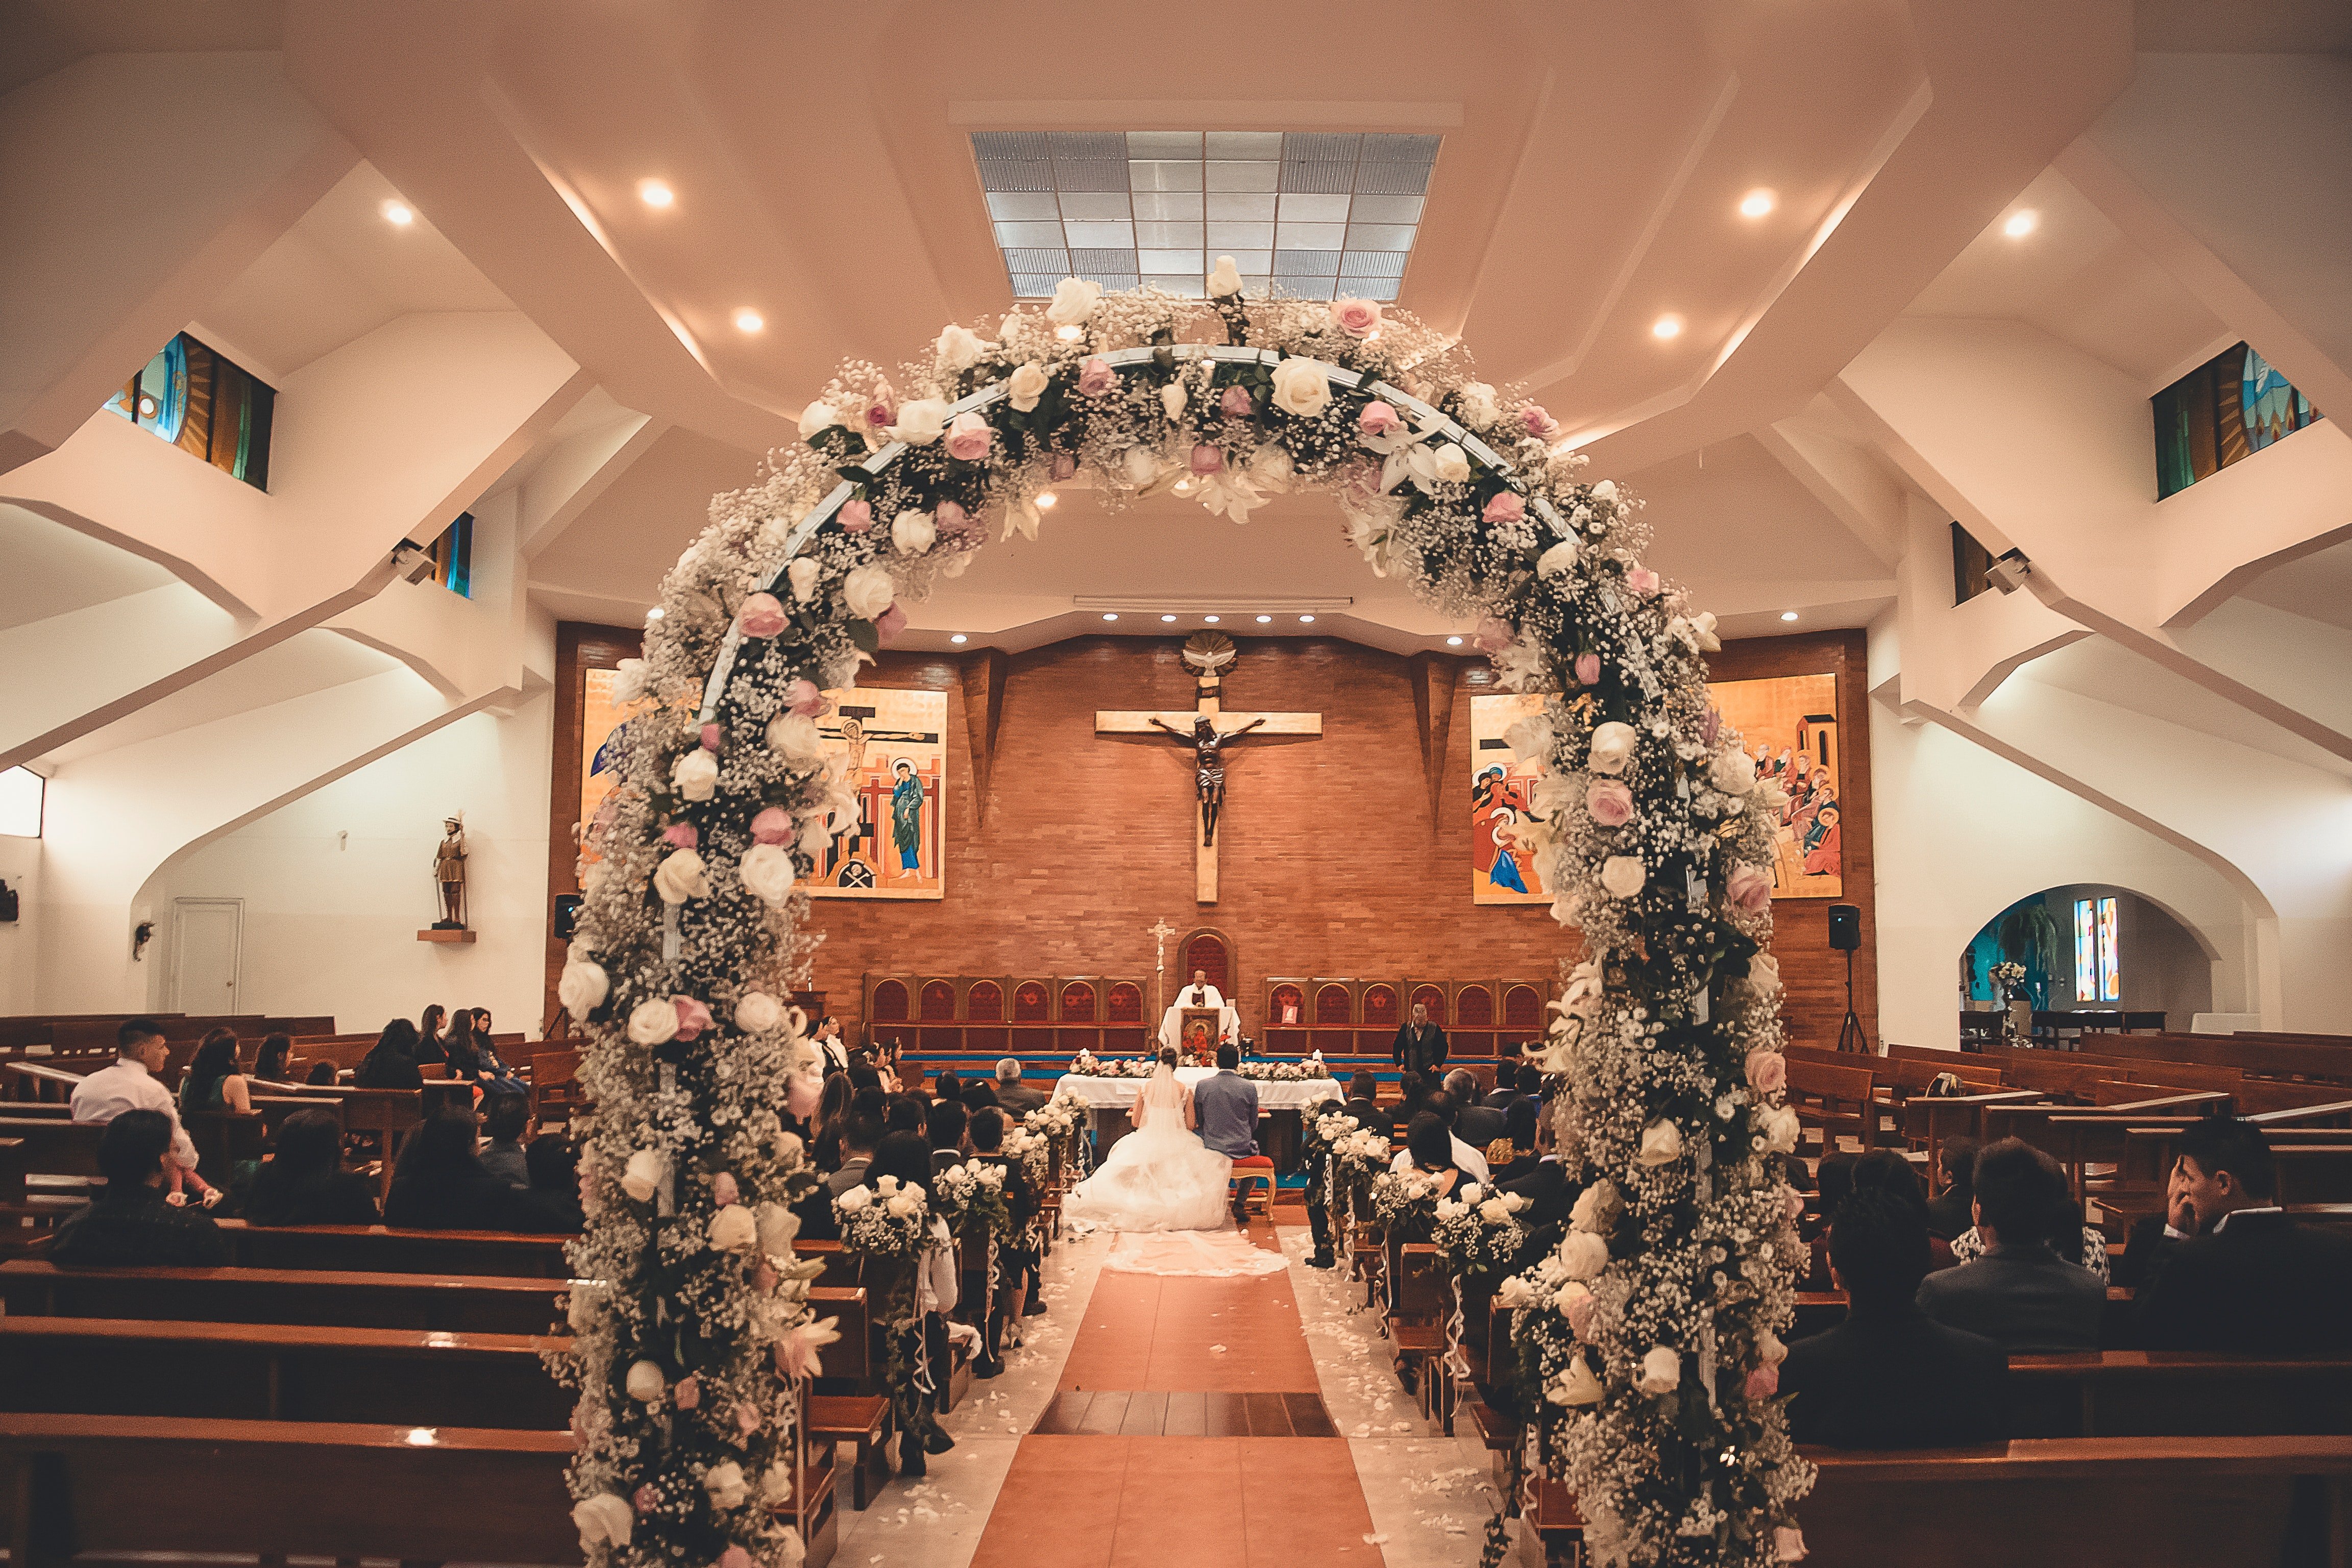 Shannon und Gilbert haben in einer Kirche geheiratet | Quelle: Pexels